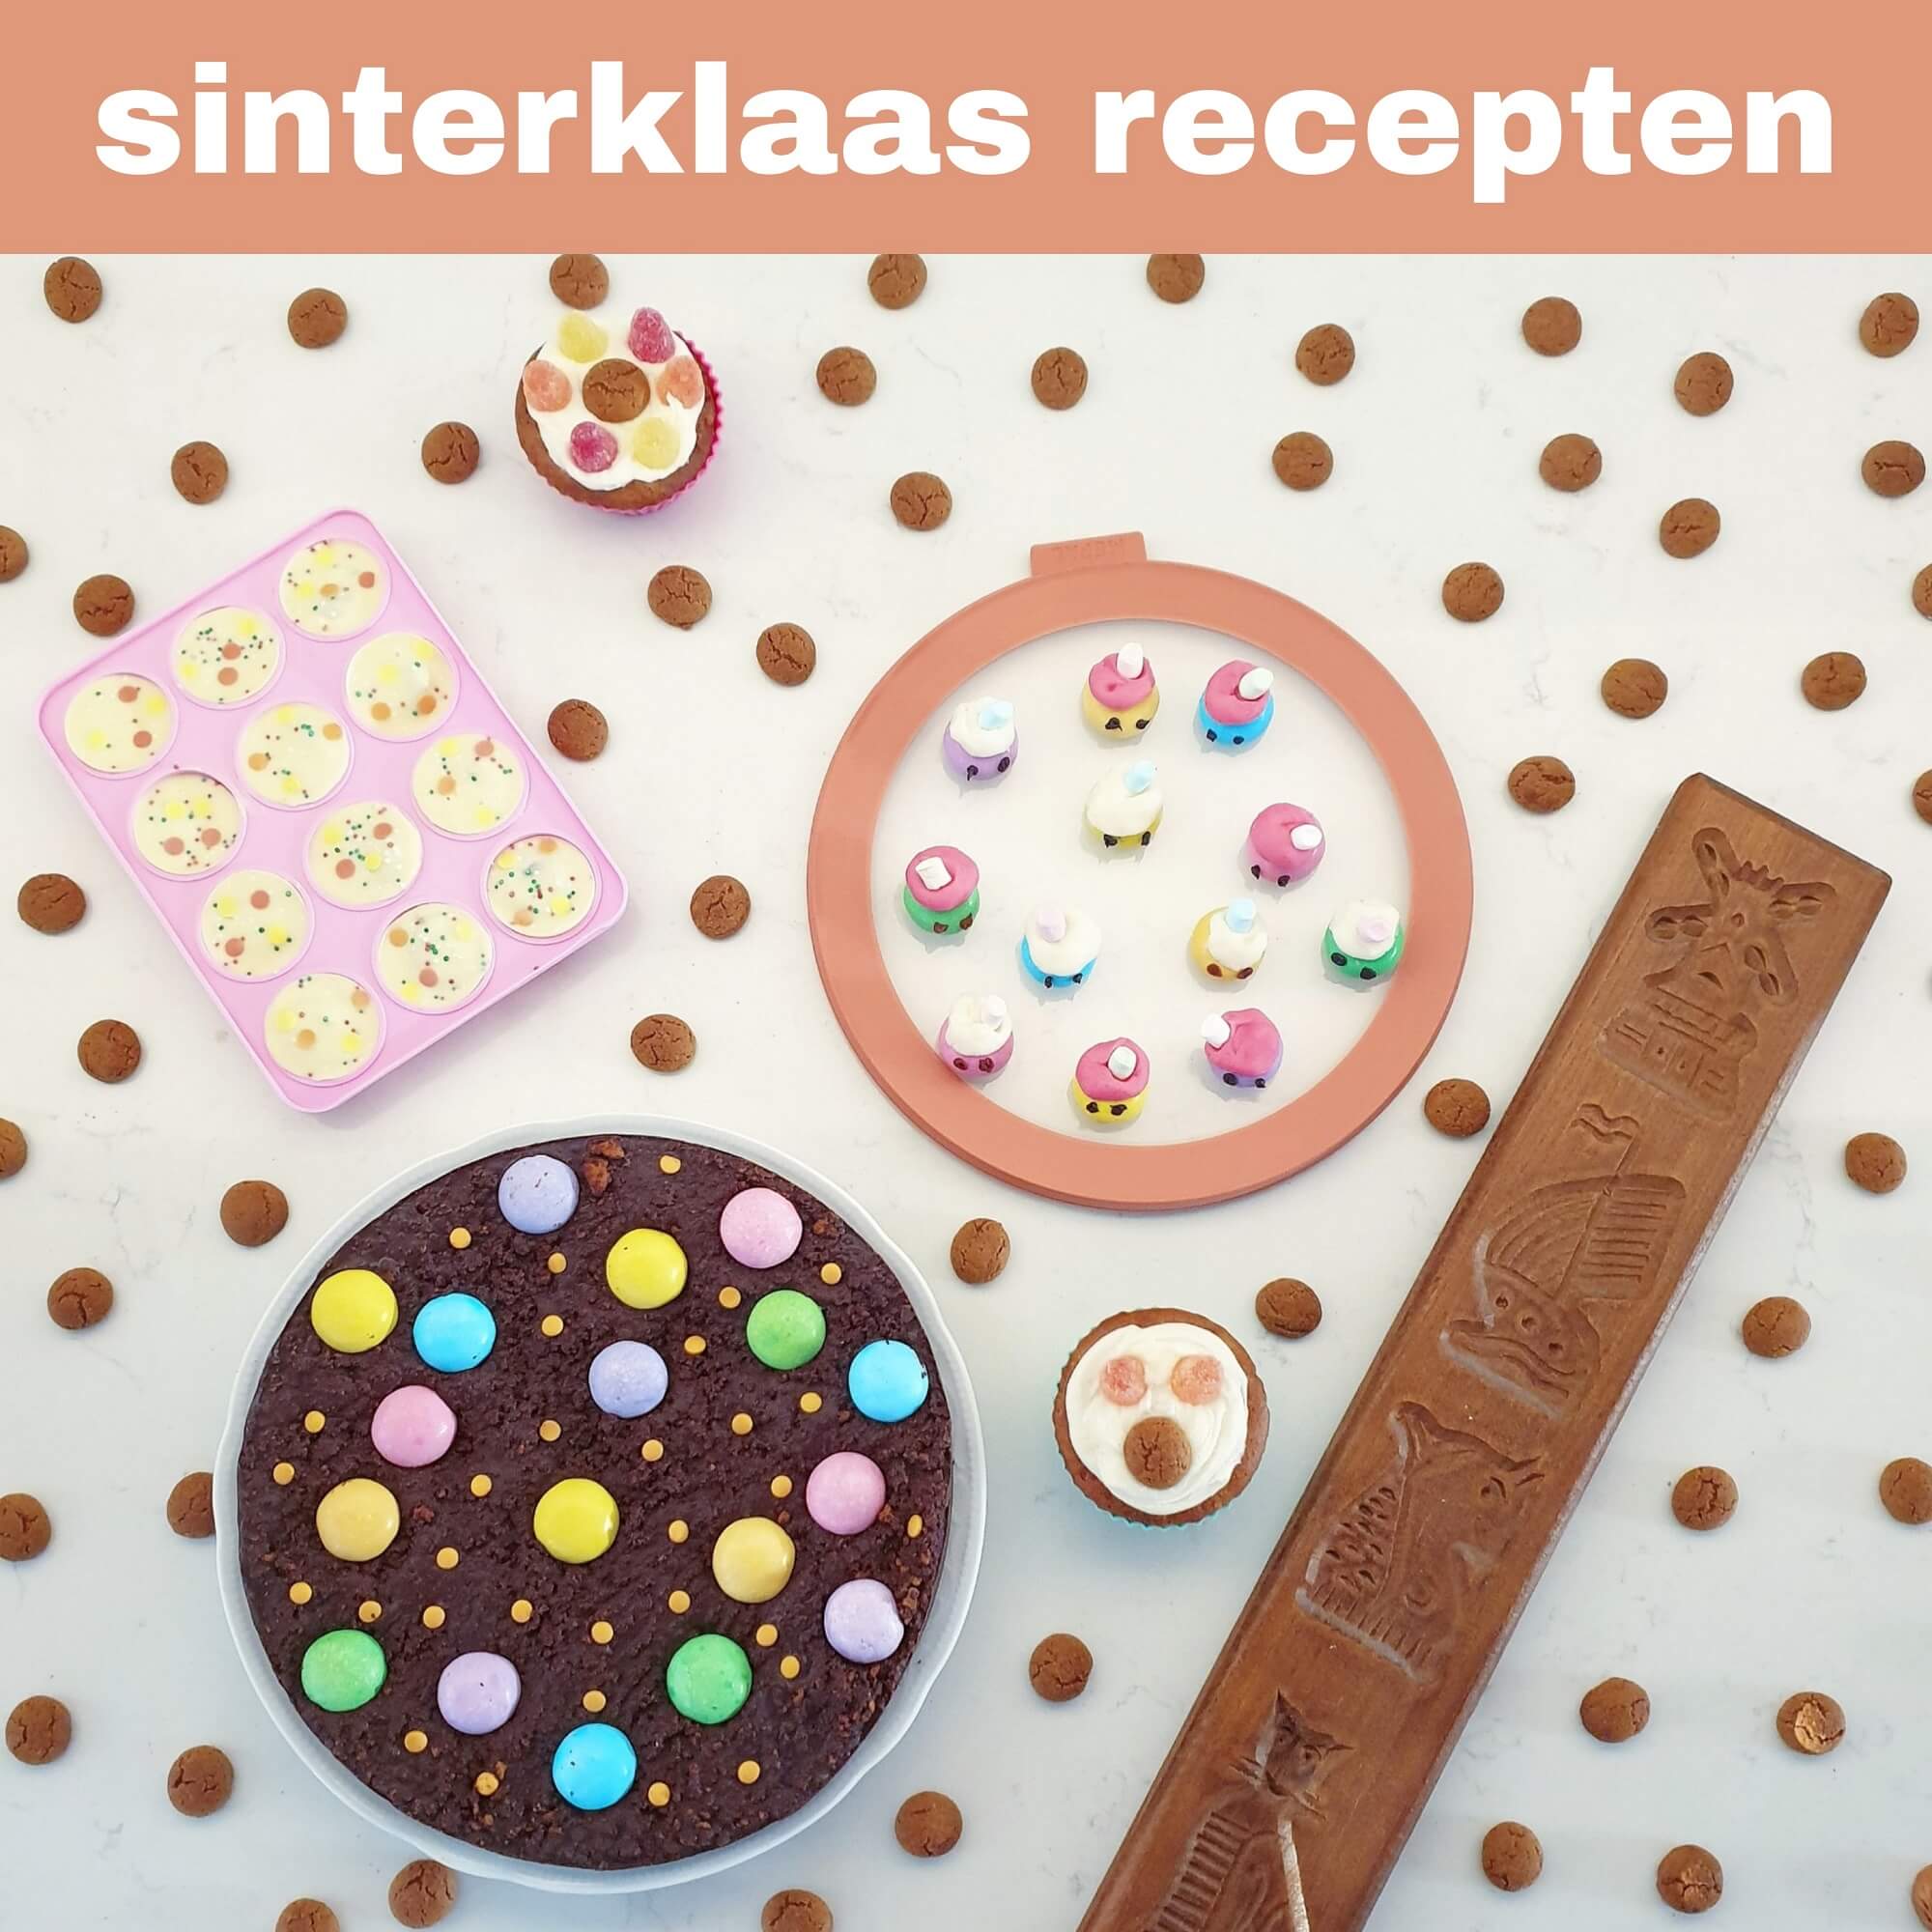 vrijwilliger alcohol Bekentenis Sinterklaas recepten: leuke ideeën om te knutselen met eten Leuk met kids